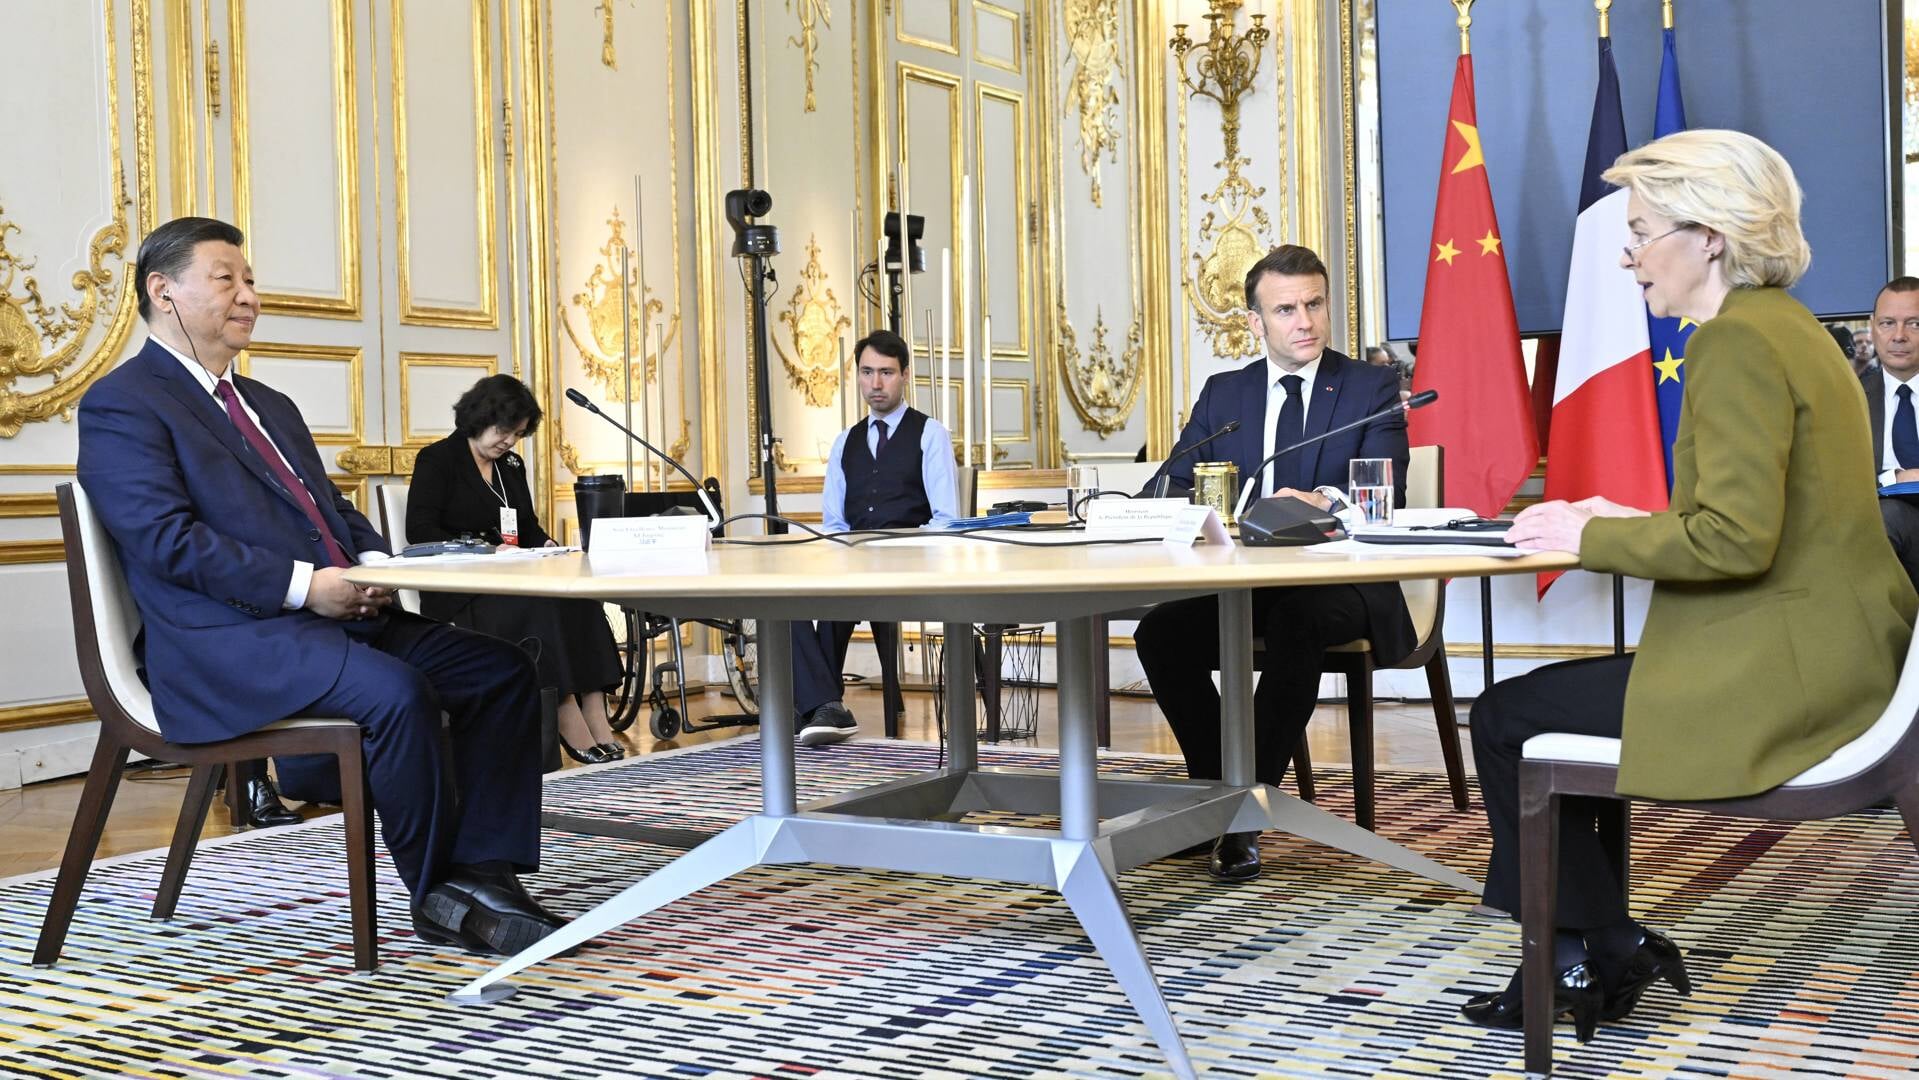 Bij het soms pittige gesprek tussen de Chinese leider Xi, president Macron en EU-commissievoorzitter Von der Leyen ging het ook om Europese eenheid